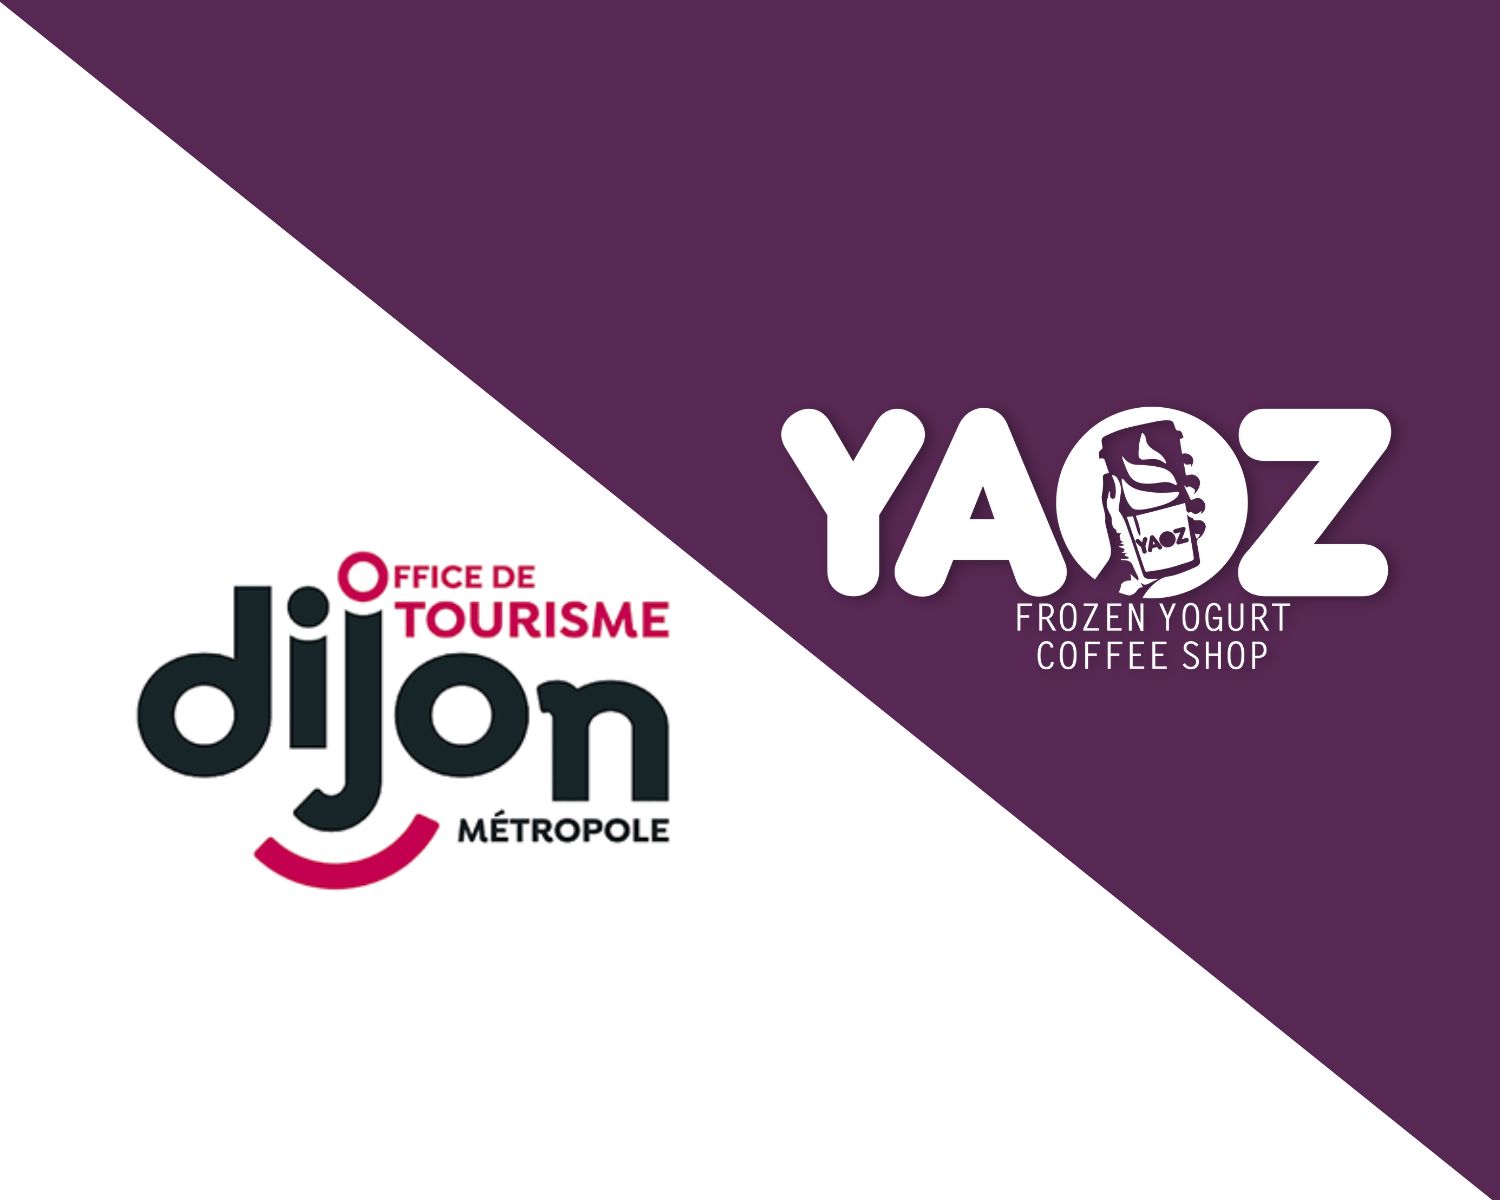 office tourisme logo YAOZ Dijon